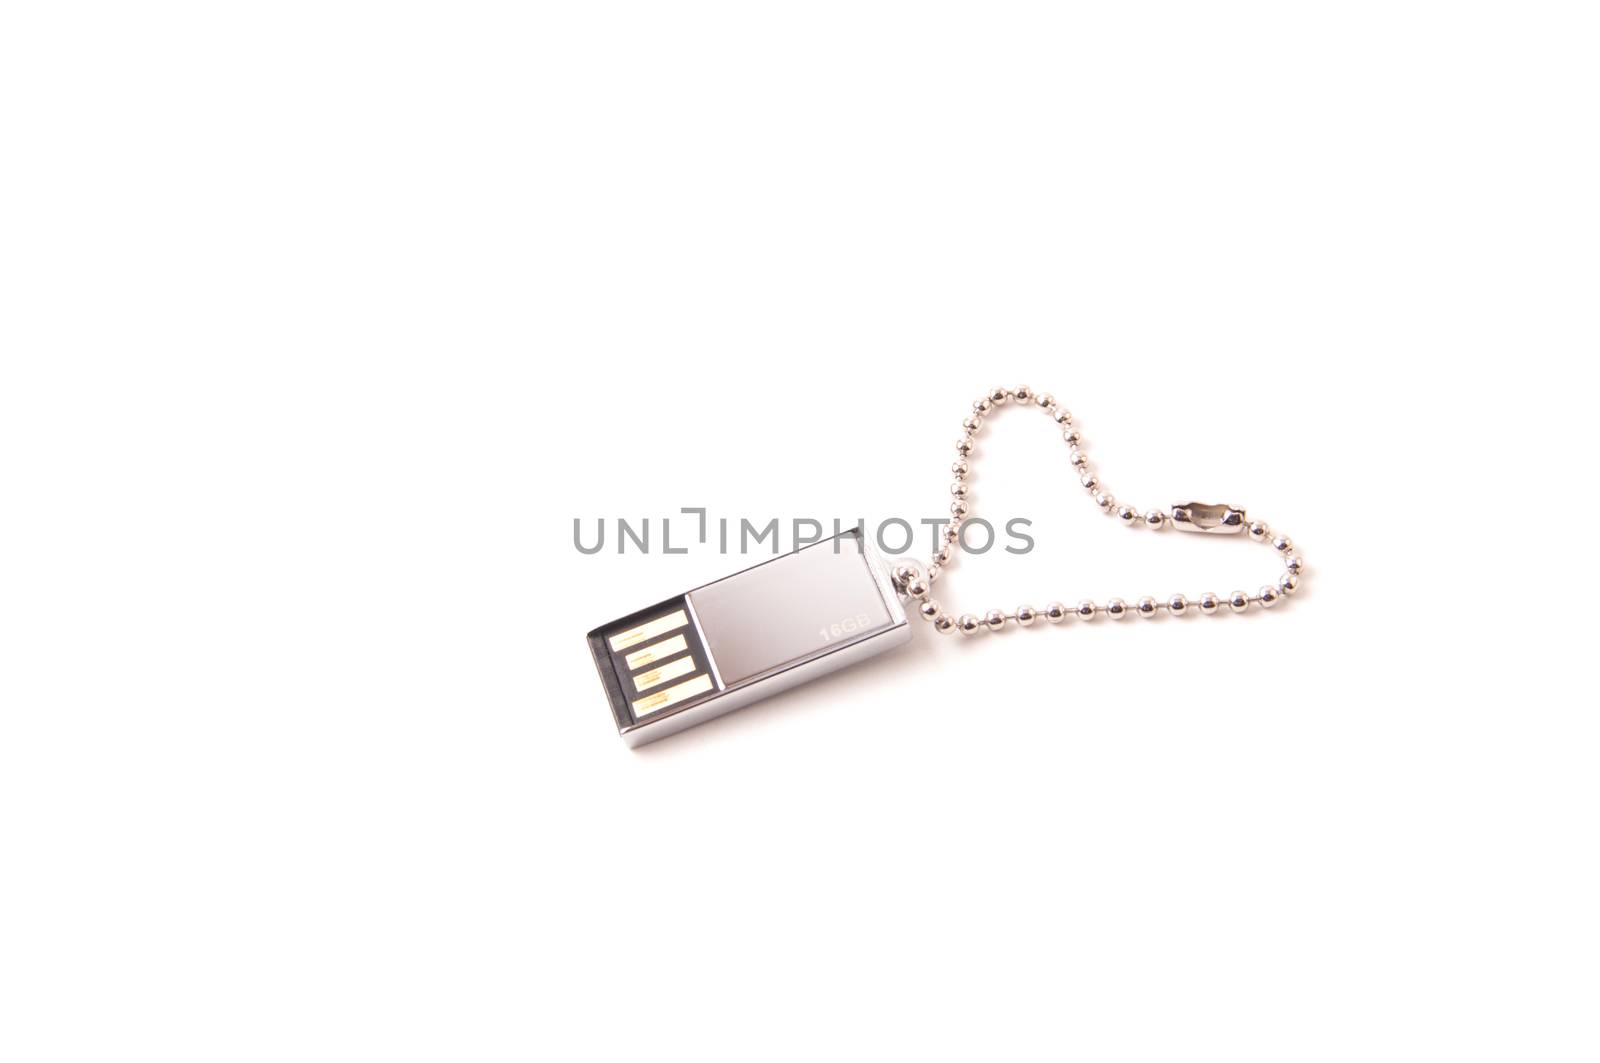 Platinum USB key by daoleduc